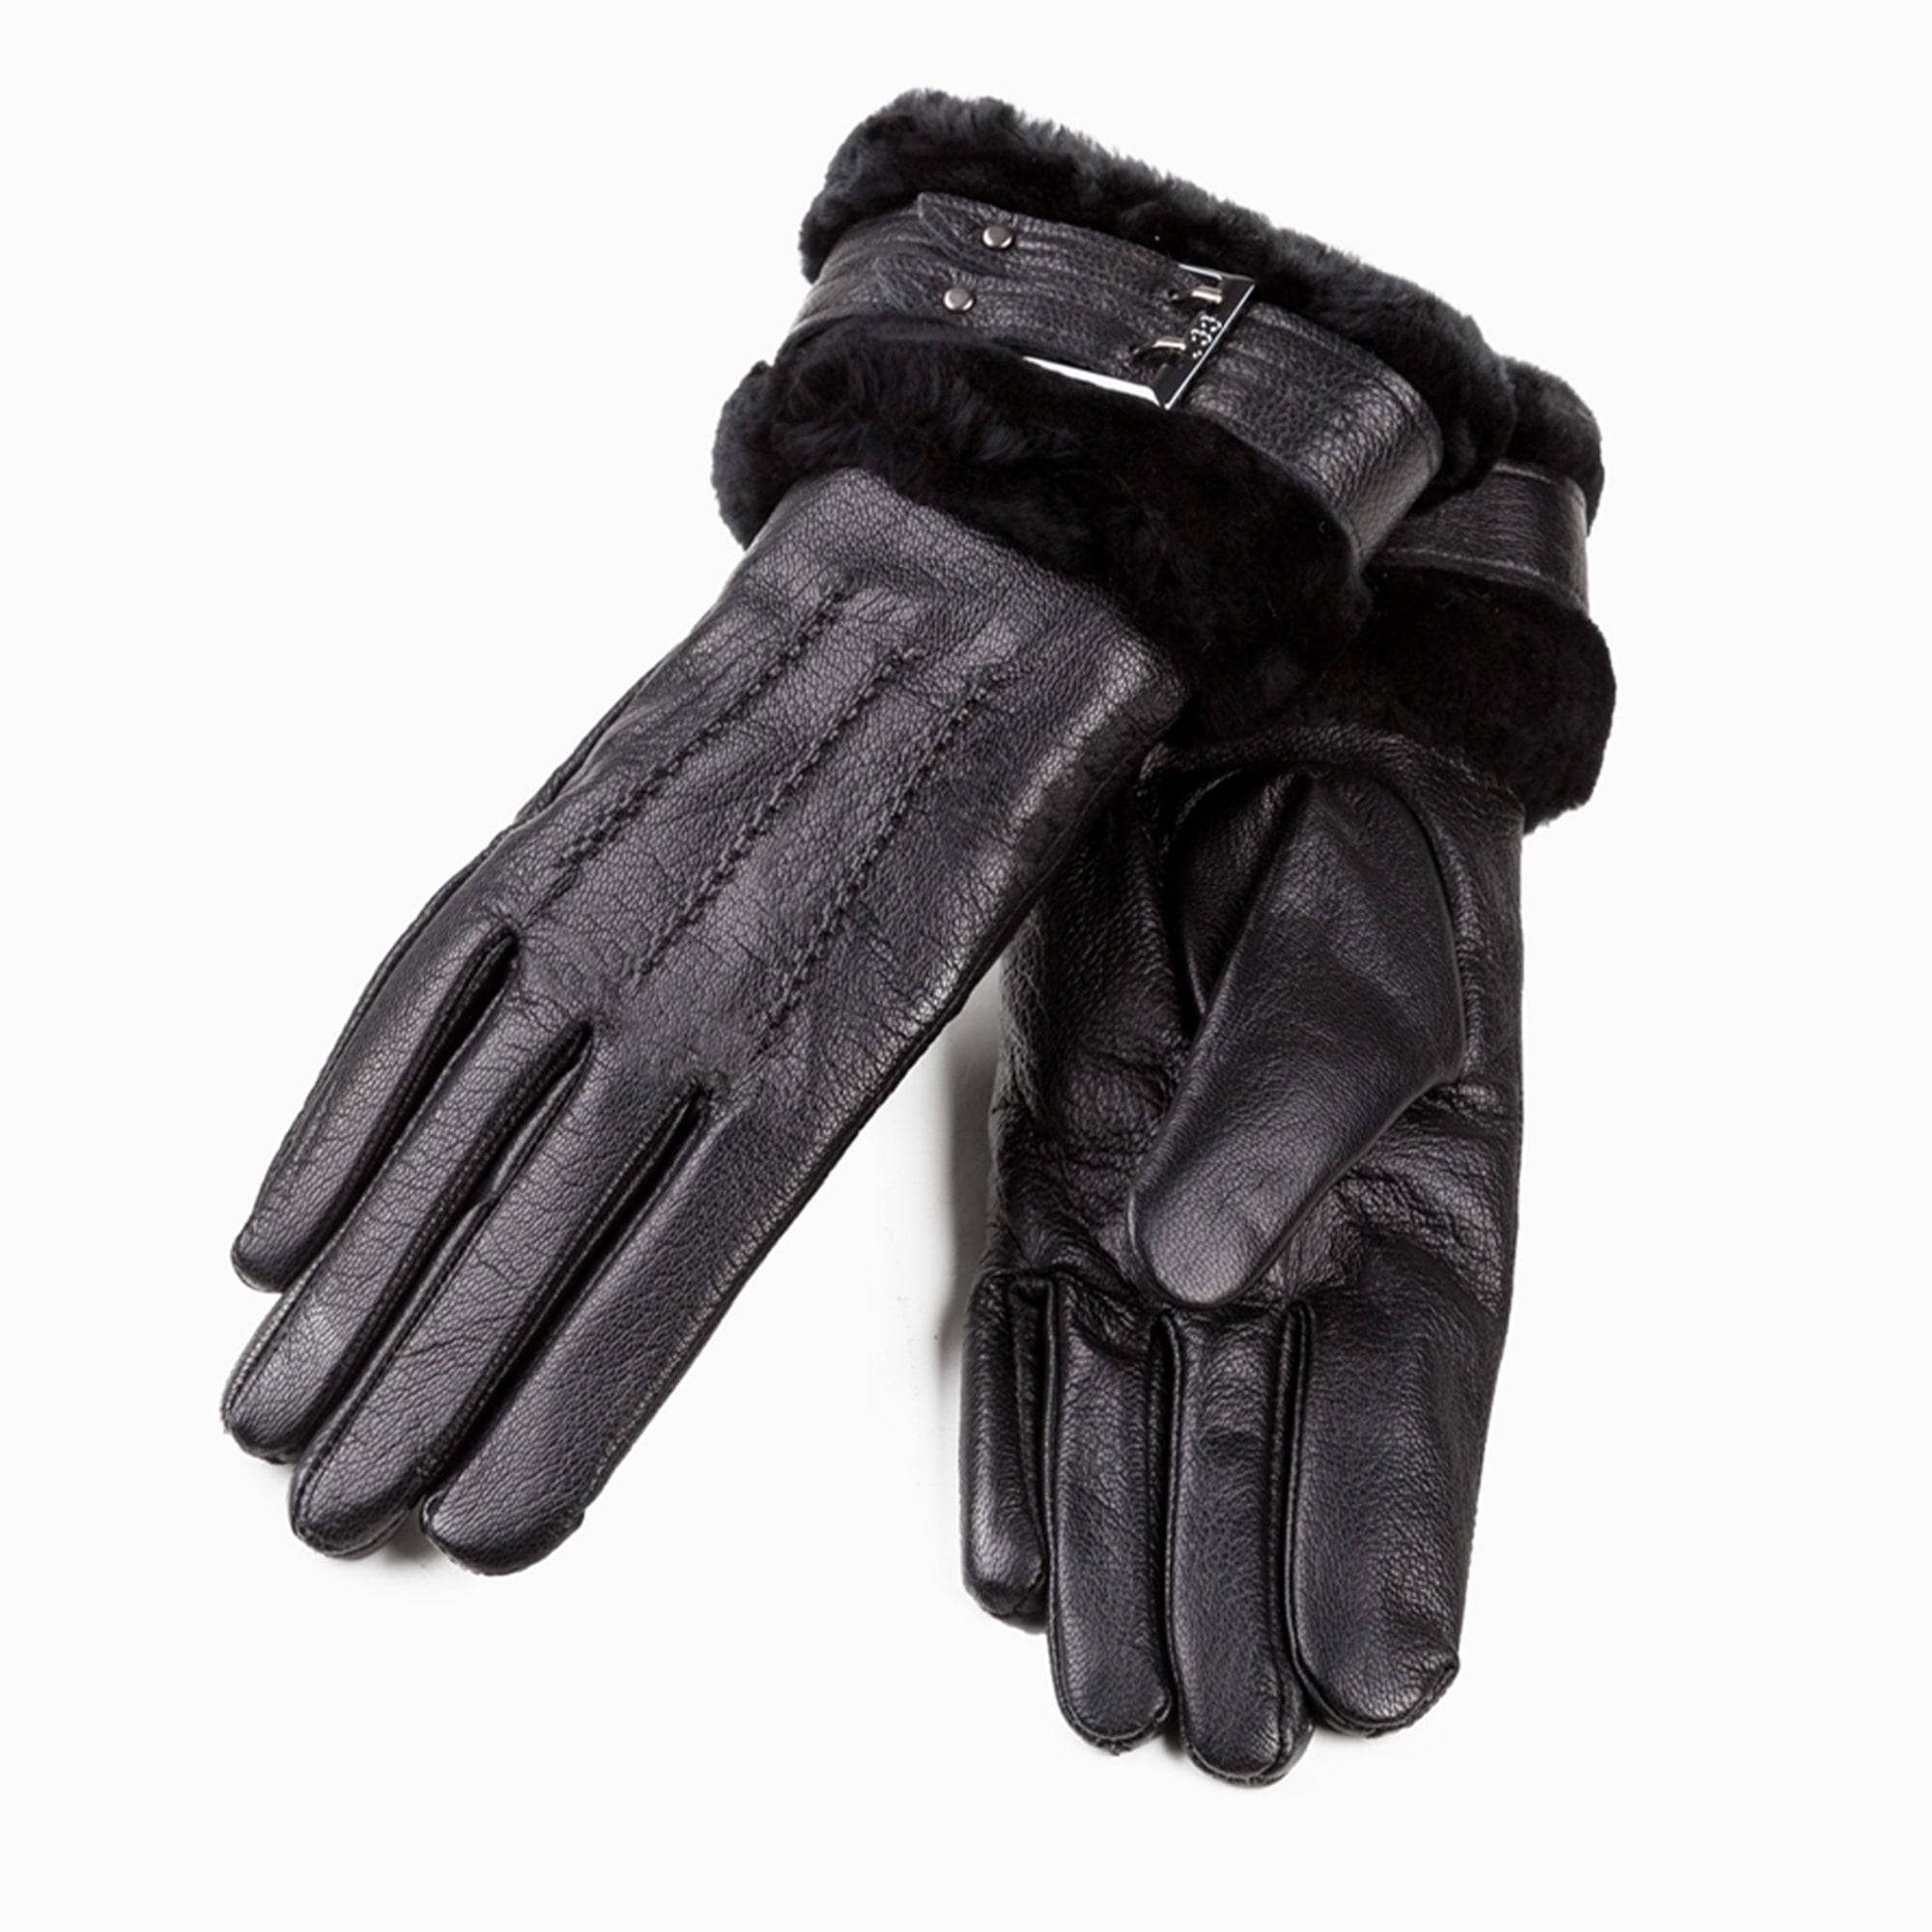  - UGG Premium Lambskin Cuff Gloves - Original UGG Australia Classic